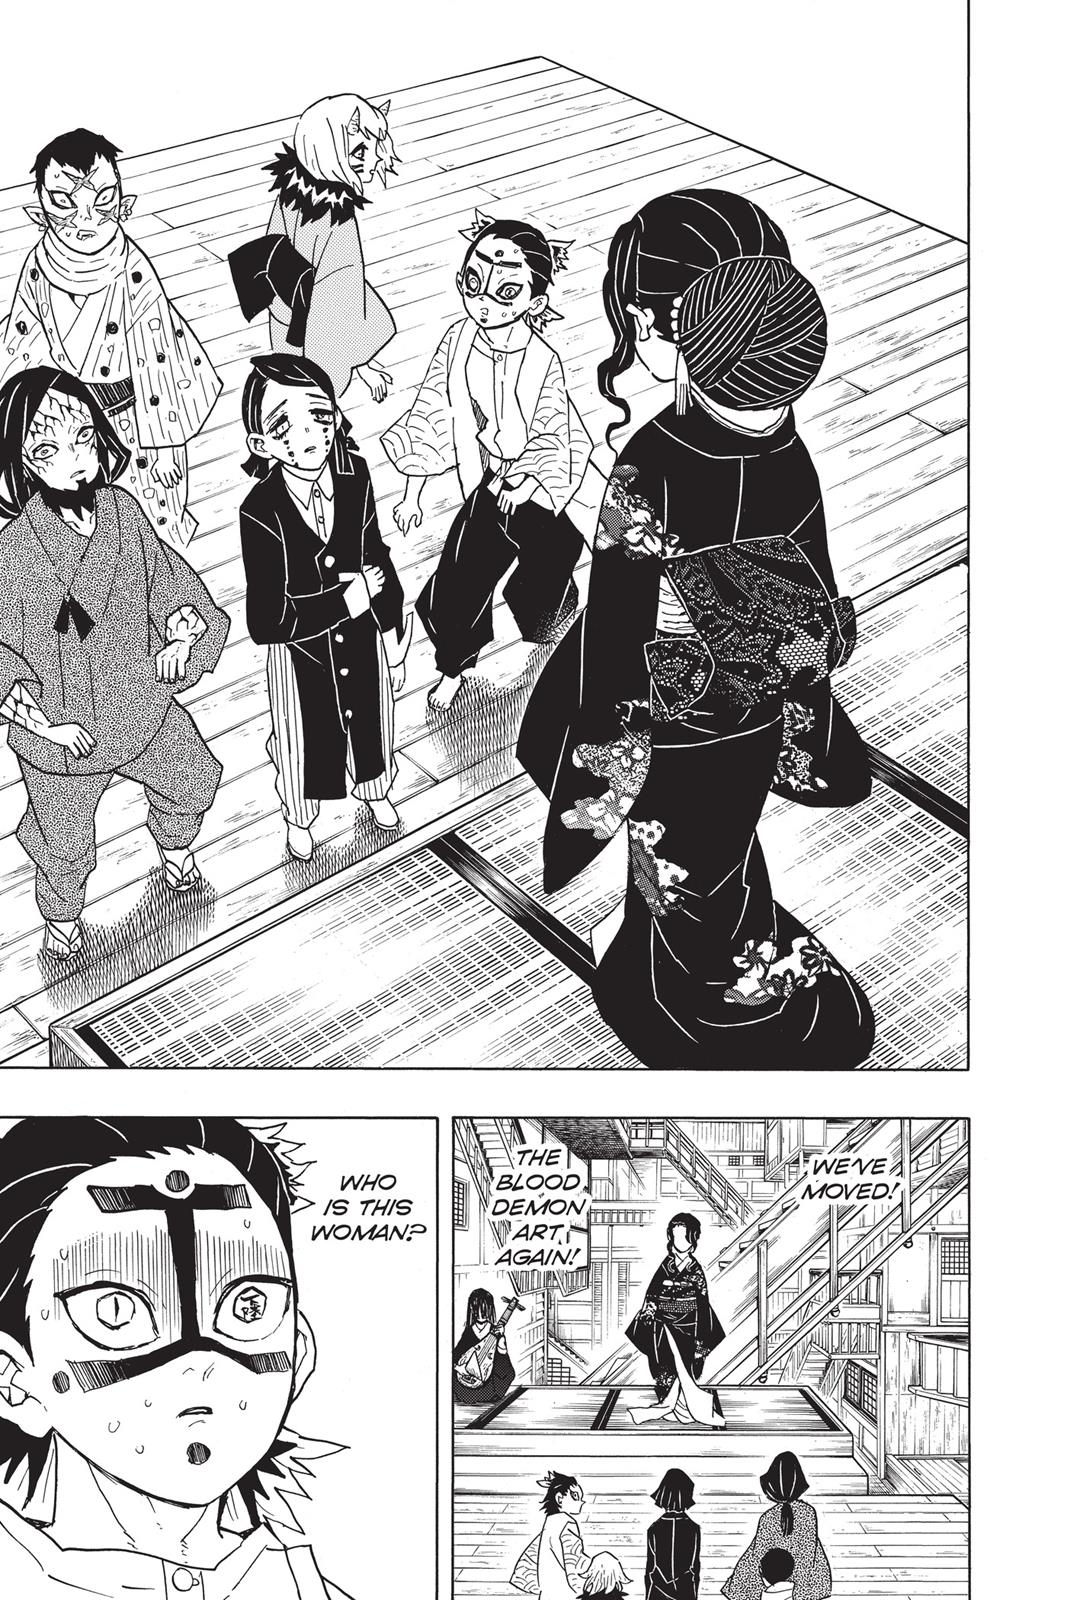 Demon Slayer Manga Manga Chapter - 51 - image 9